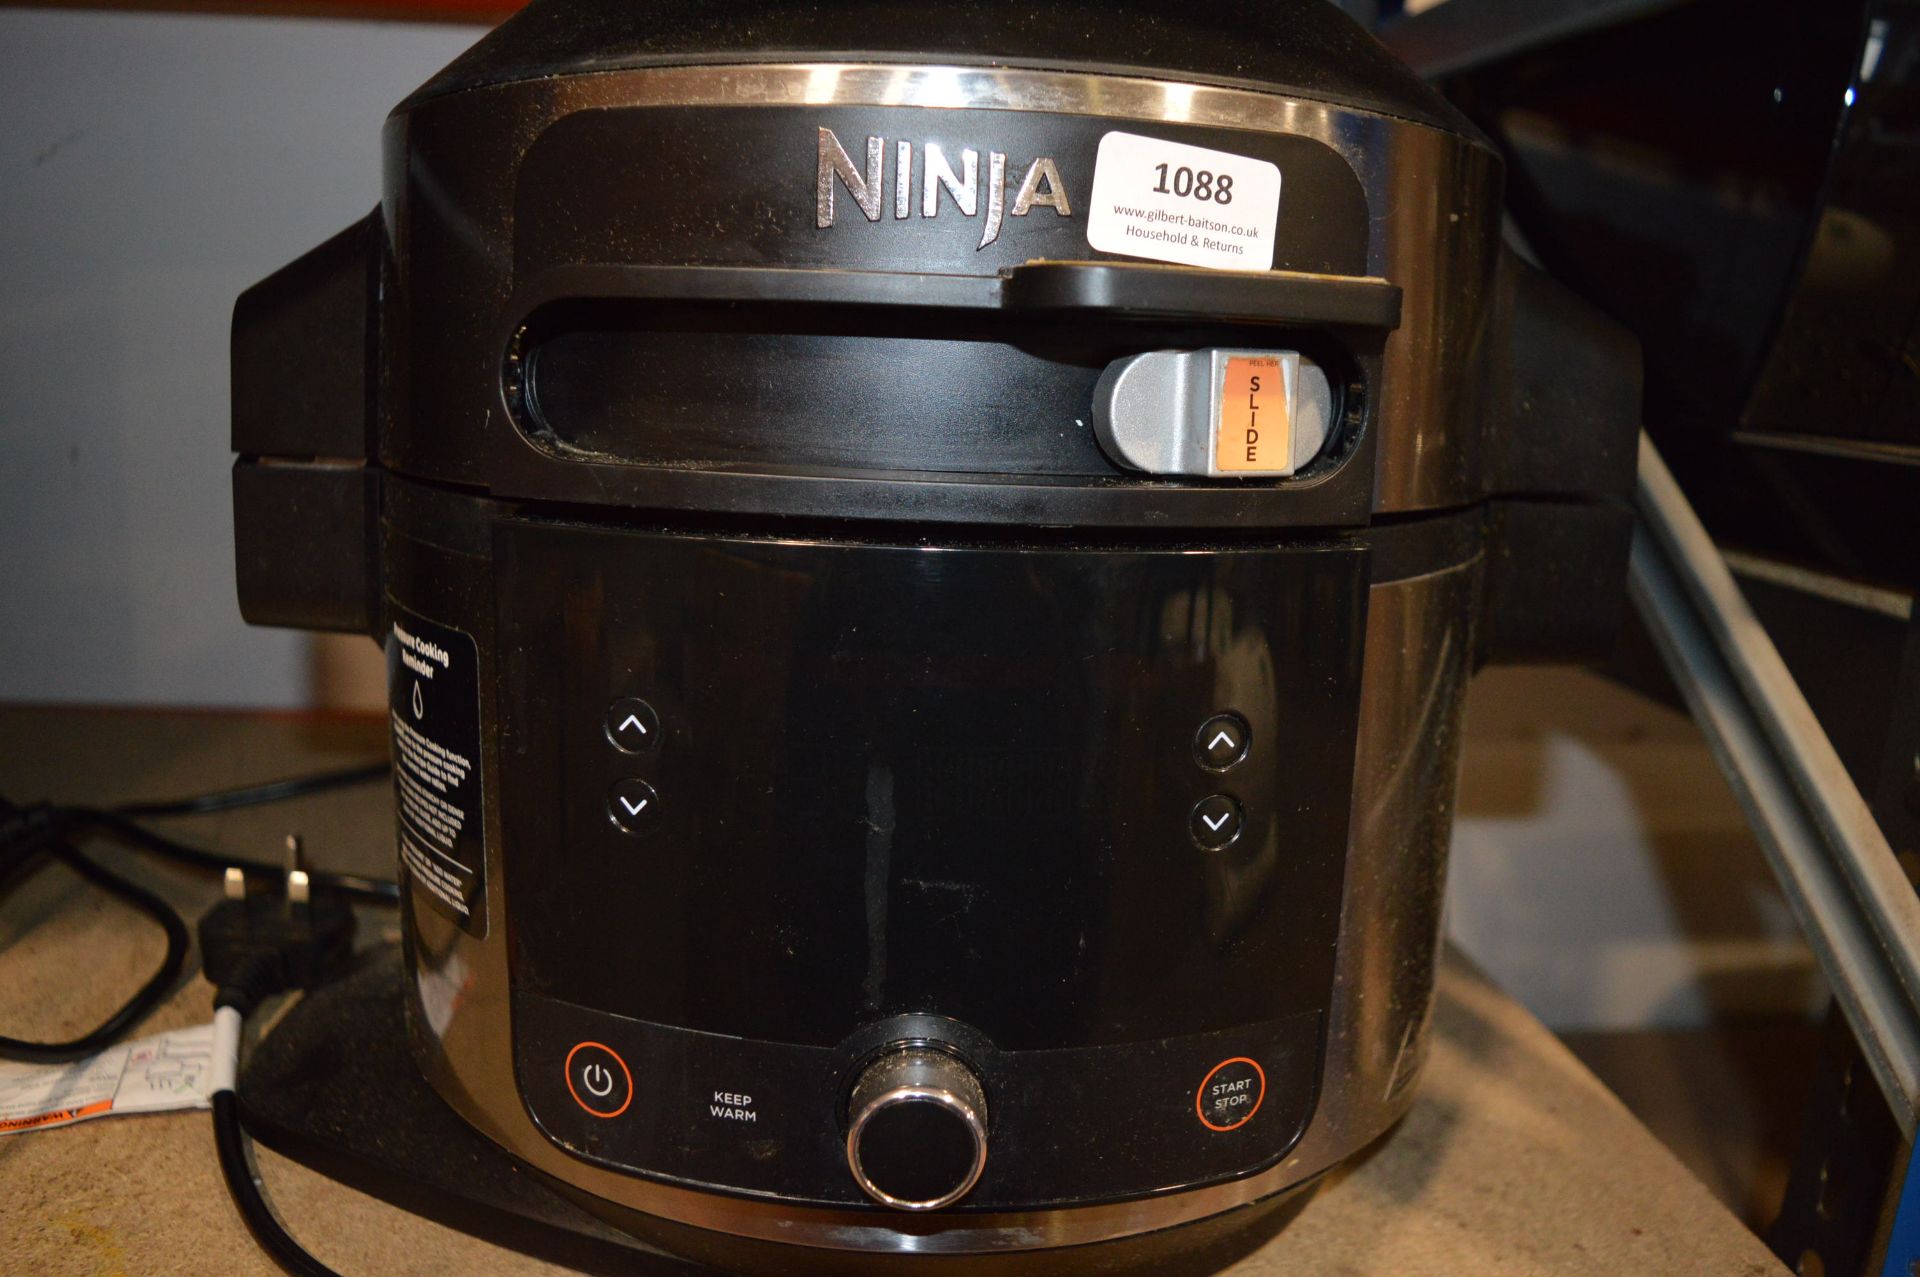 *Ninja Multicooker